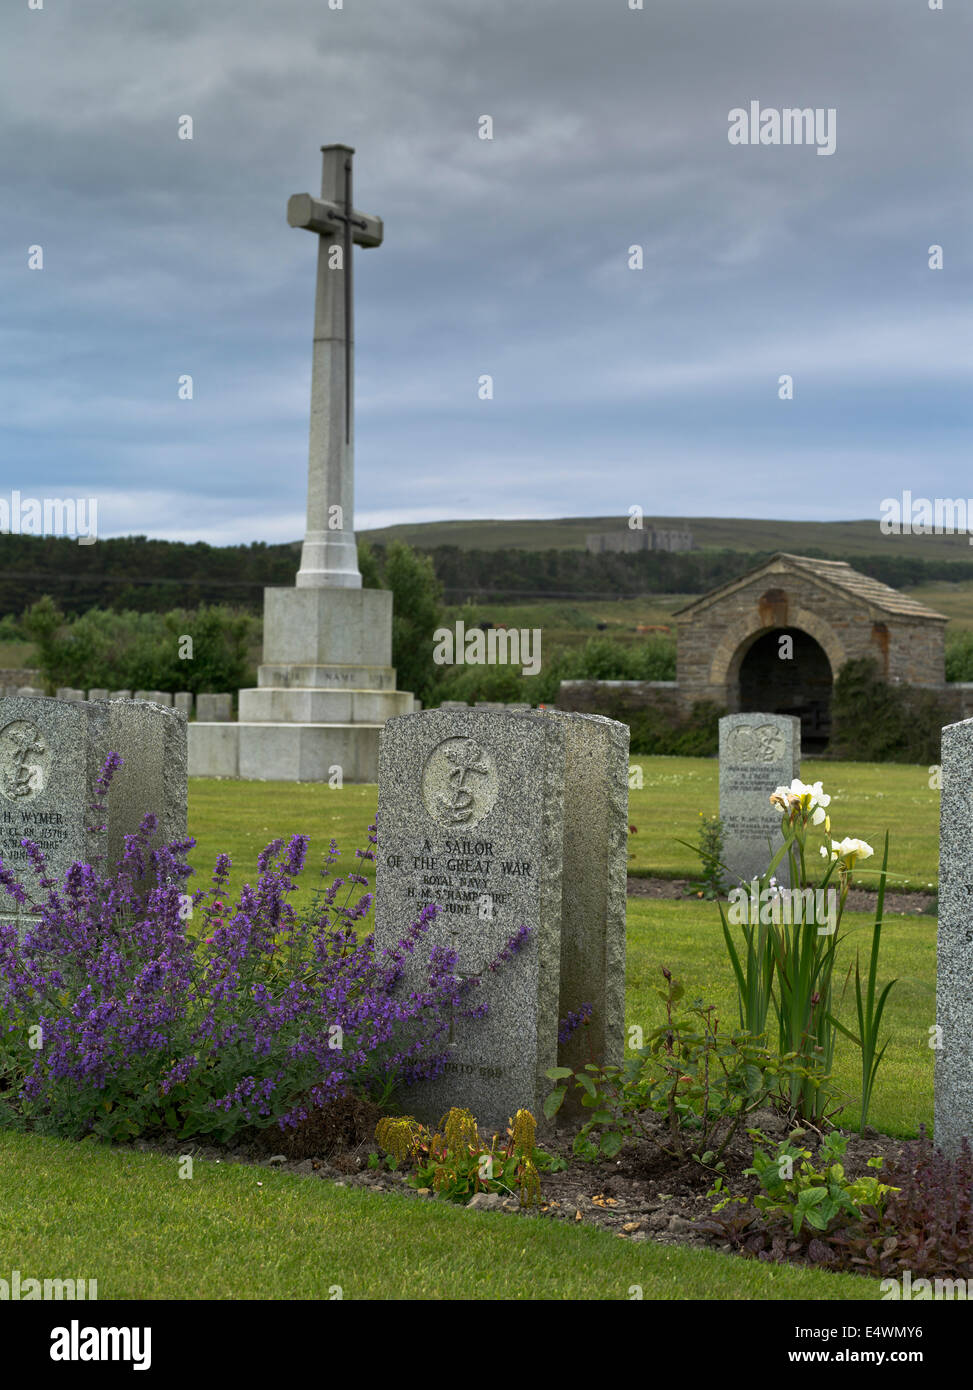 The Tudor dh cimetière naval de la première guerre mondiale ORCADES HOY tombe cimetière cimetière militaire pierre croix marine Banque D'Images